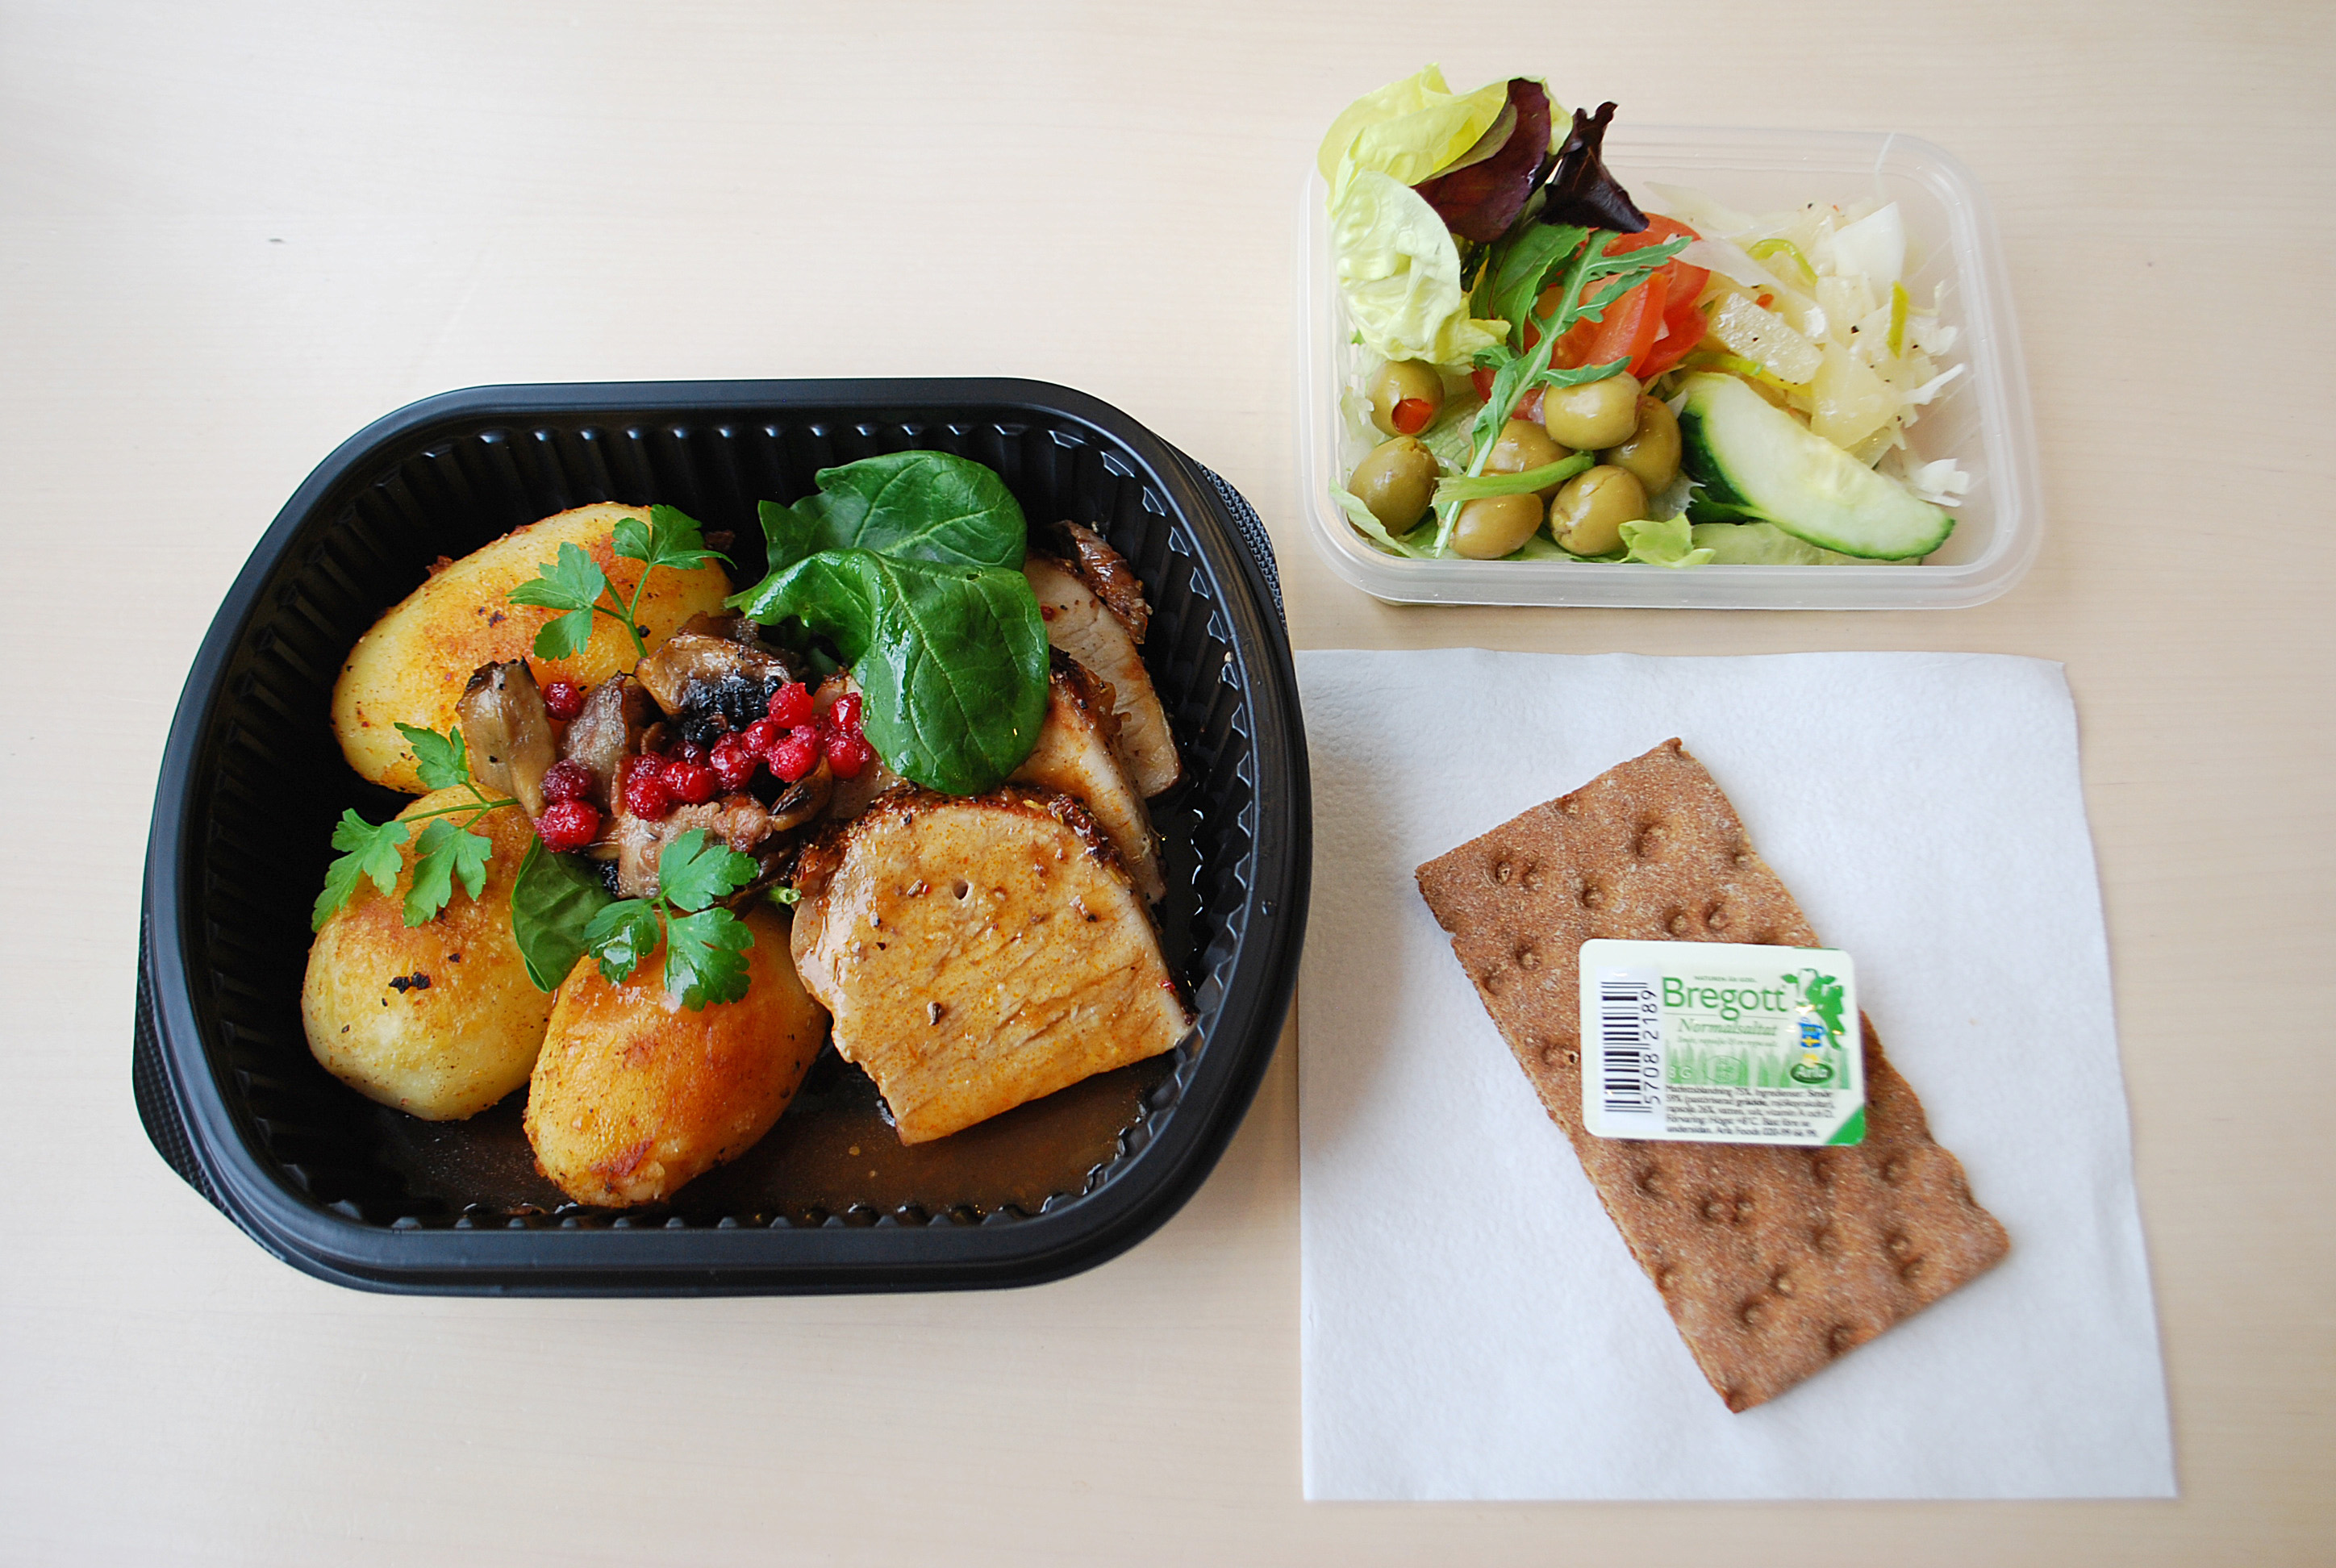 En lunchmåltid med potatis och fläskytterfilé i en lunchlåda